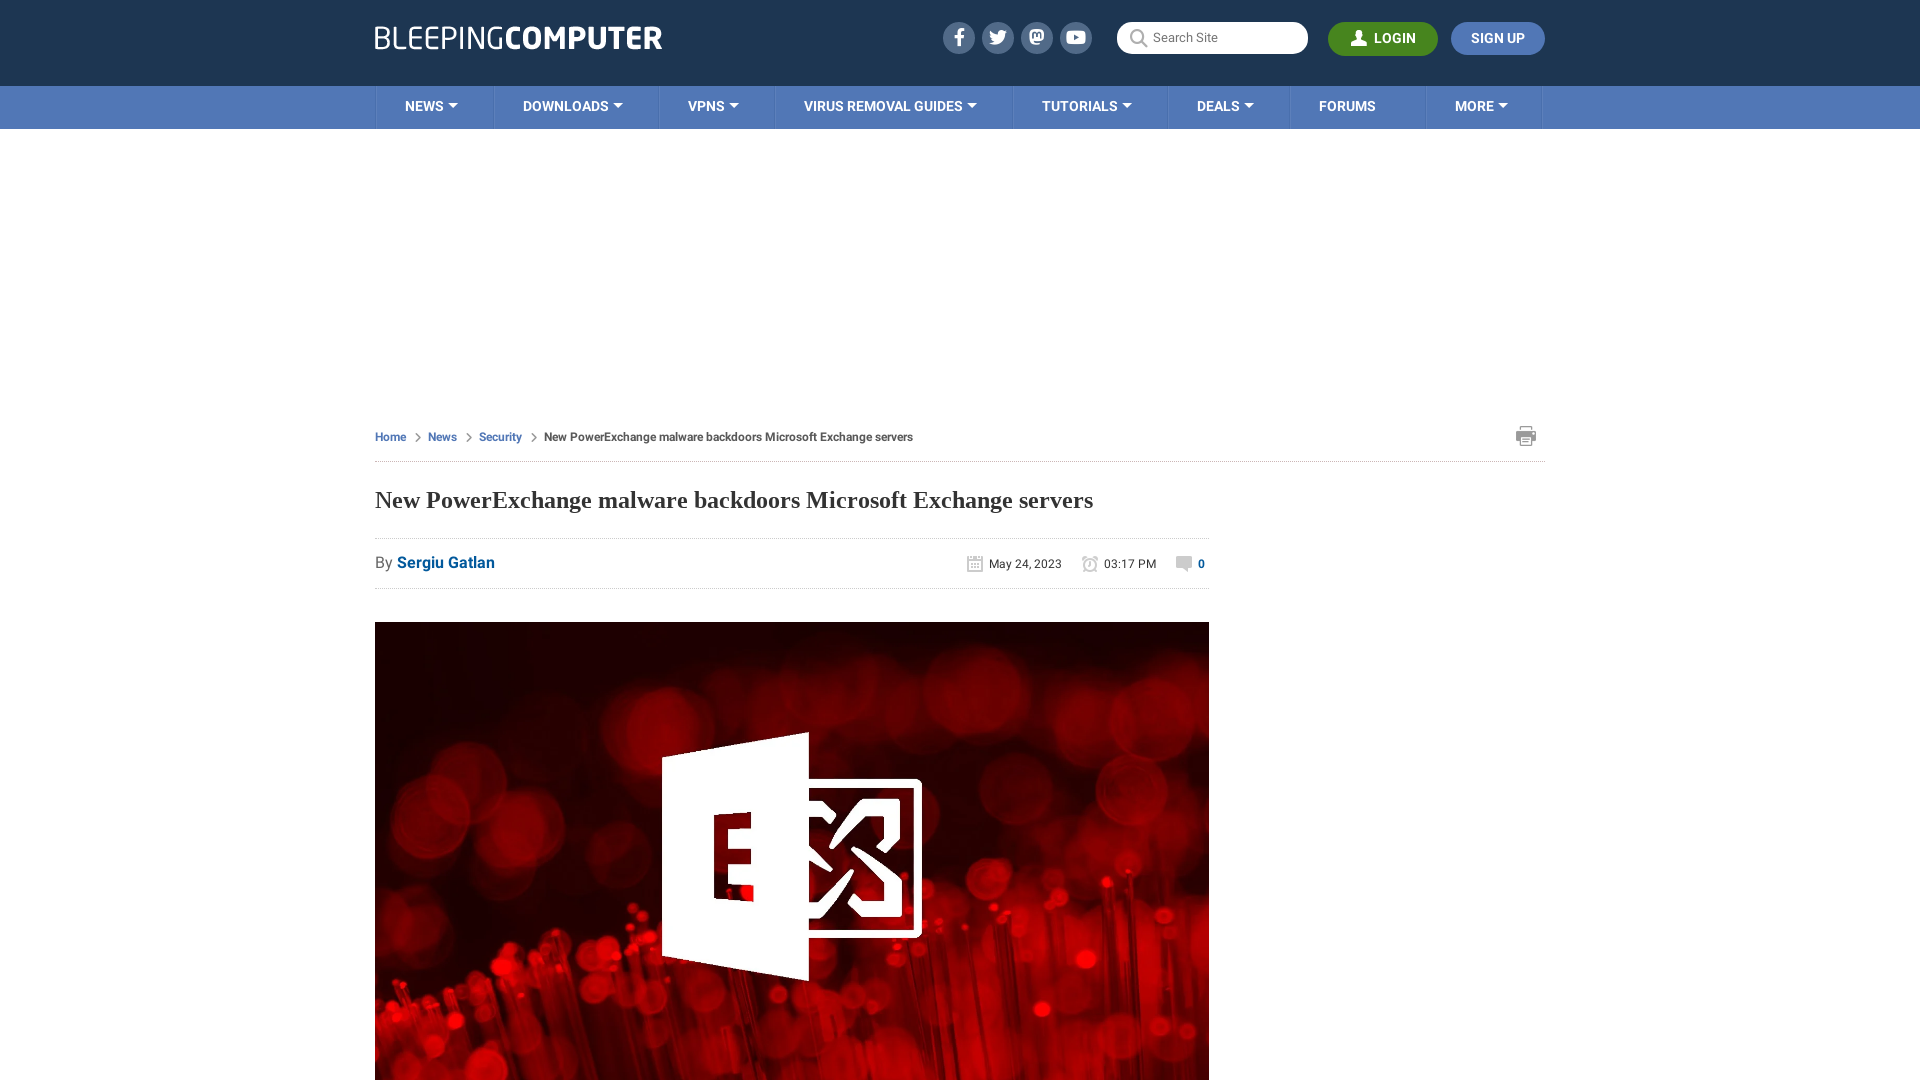 New PowerExchange malware backdoors Microsoft Exchange servers